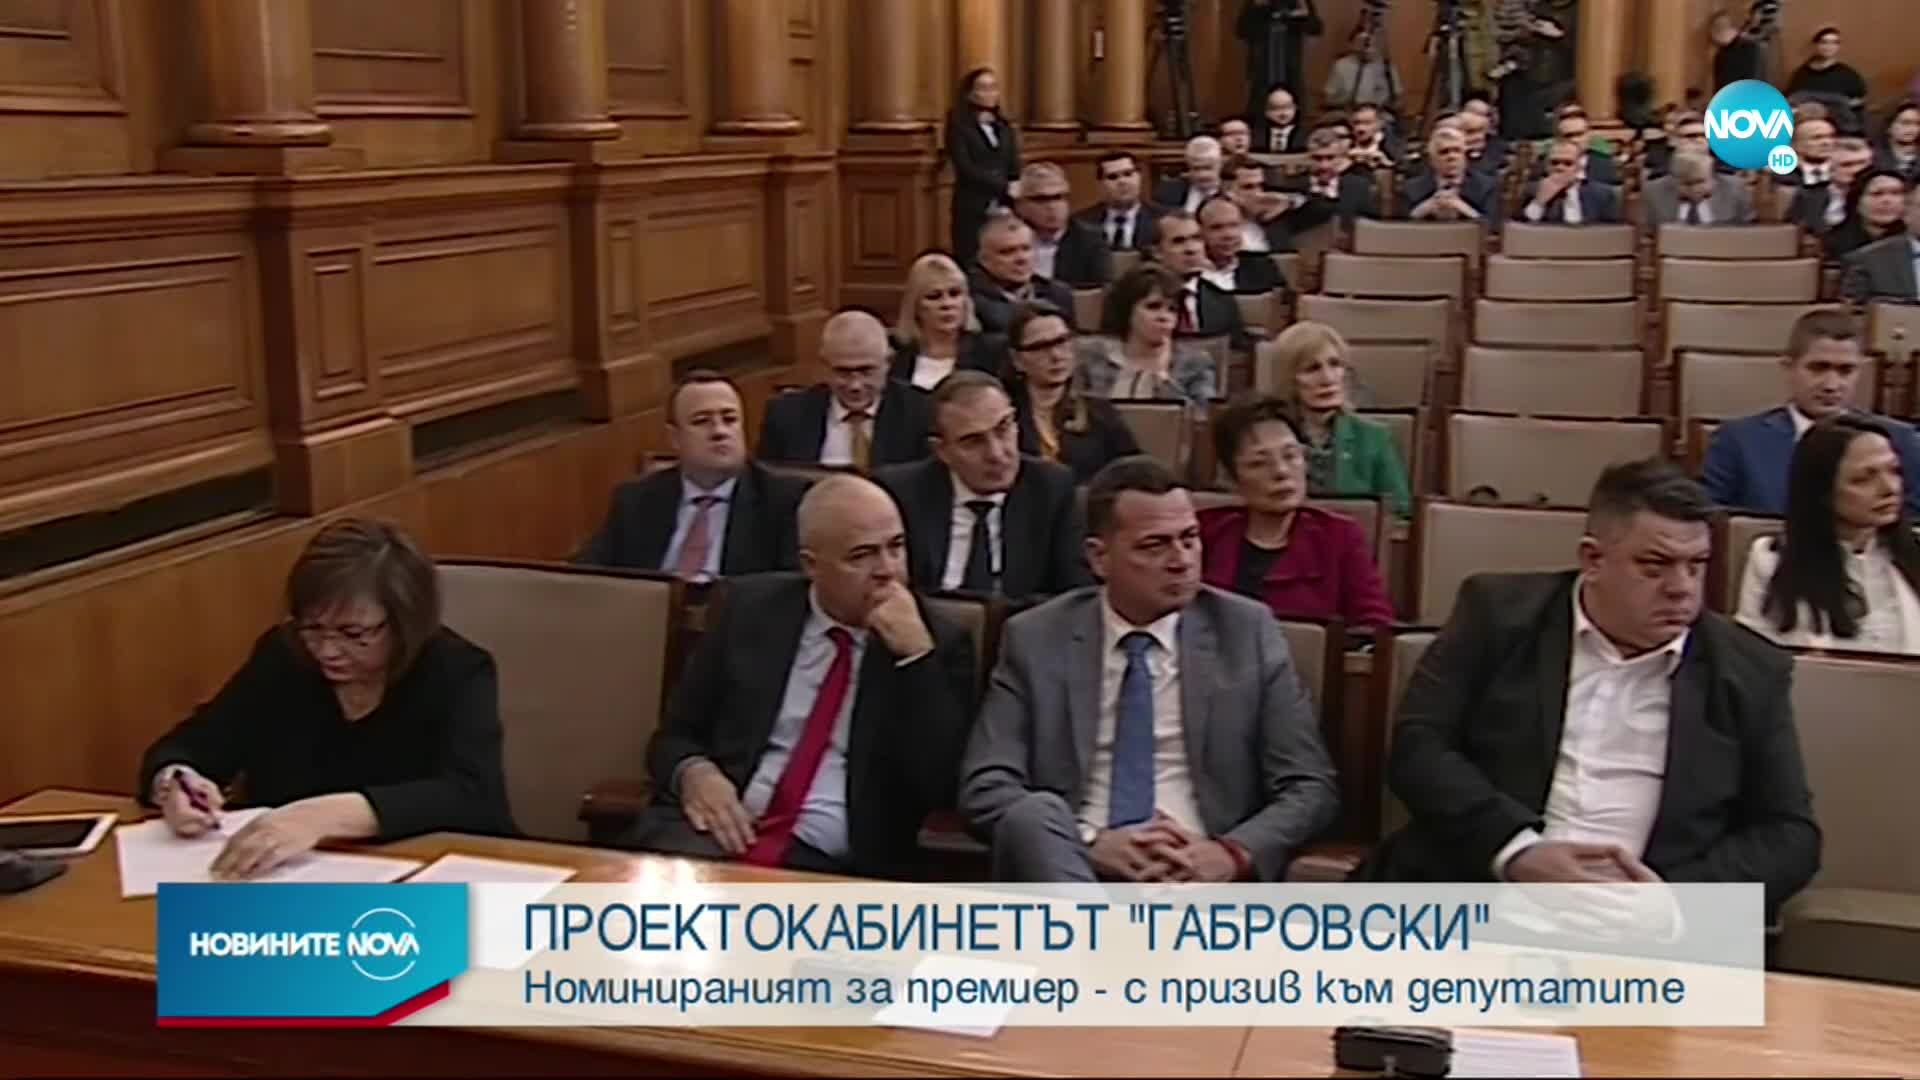 Габровски: Твърденията за голям шанс за съставяне на правителство с третия мандат са подвеждащи